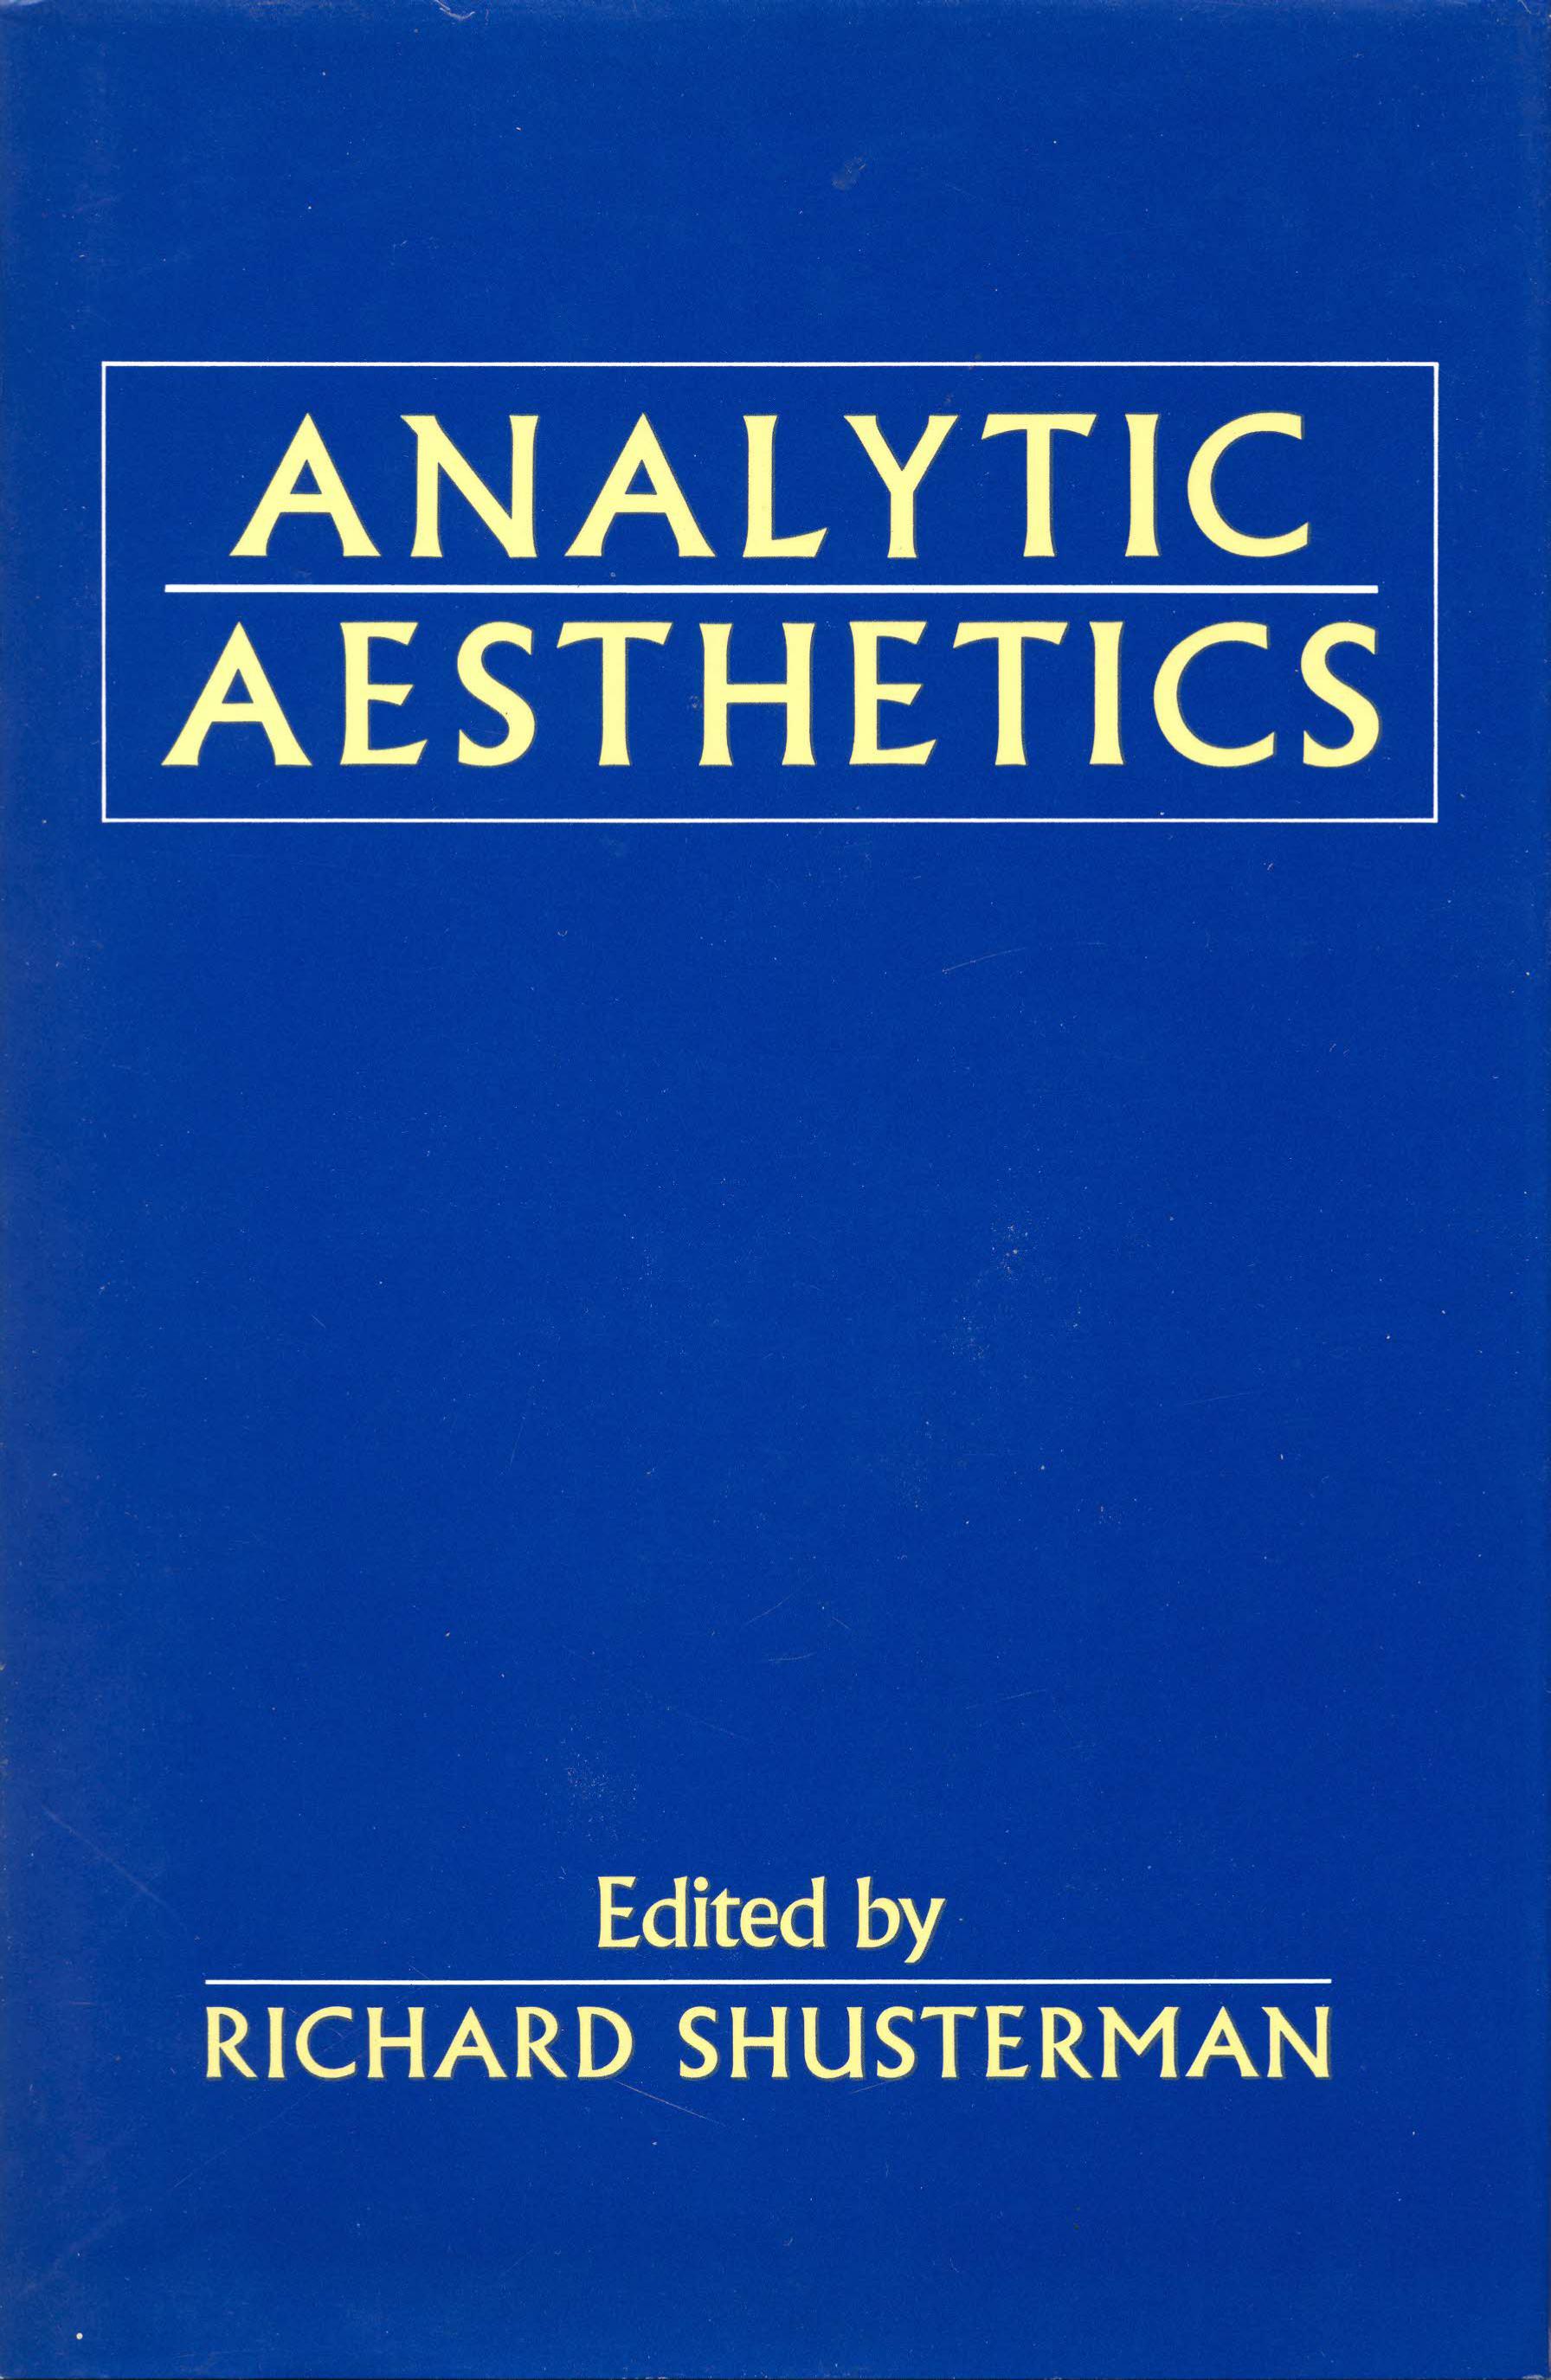 Analytic Aesthetics